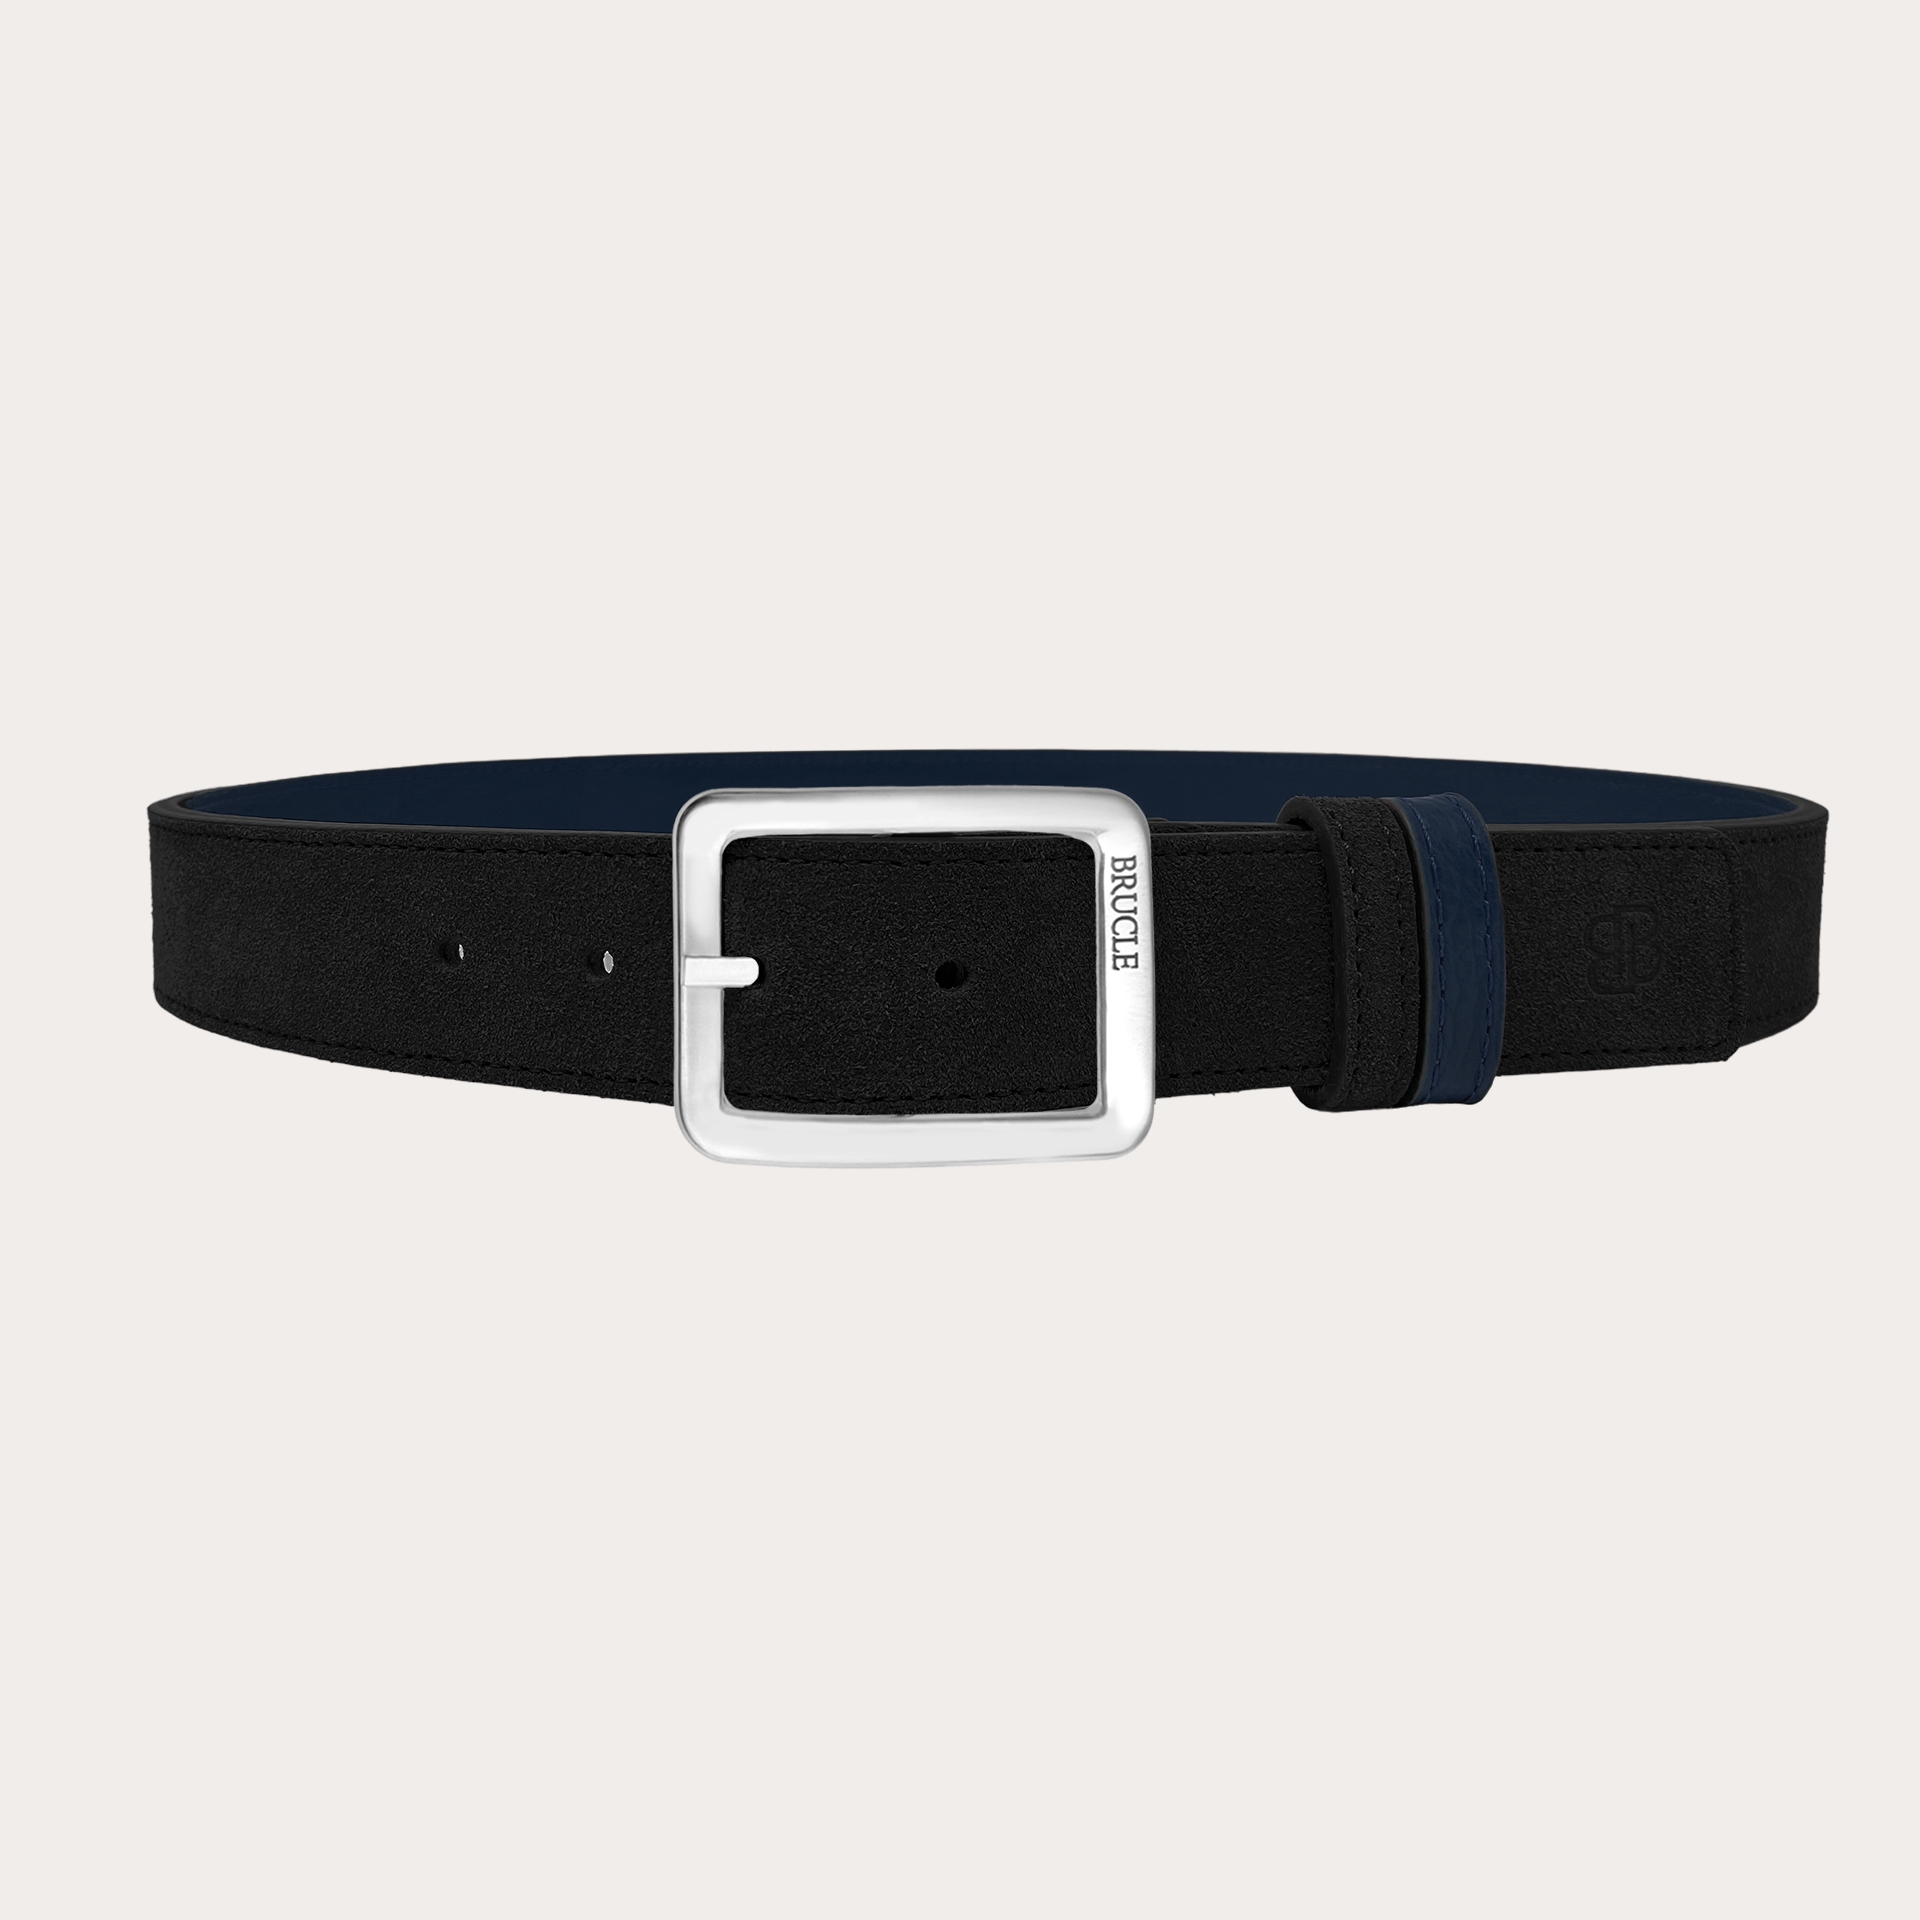 Cintura reversibile scamosciata nera e pelle blue navy